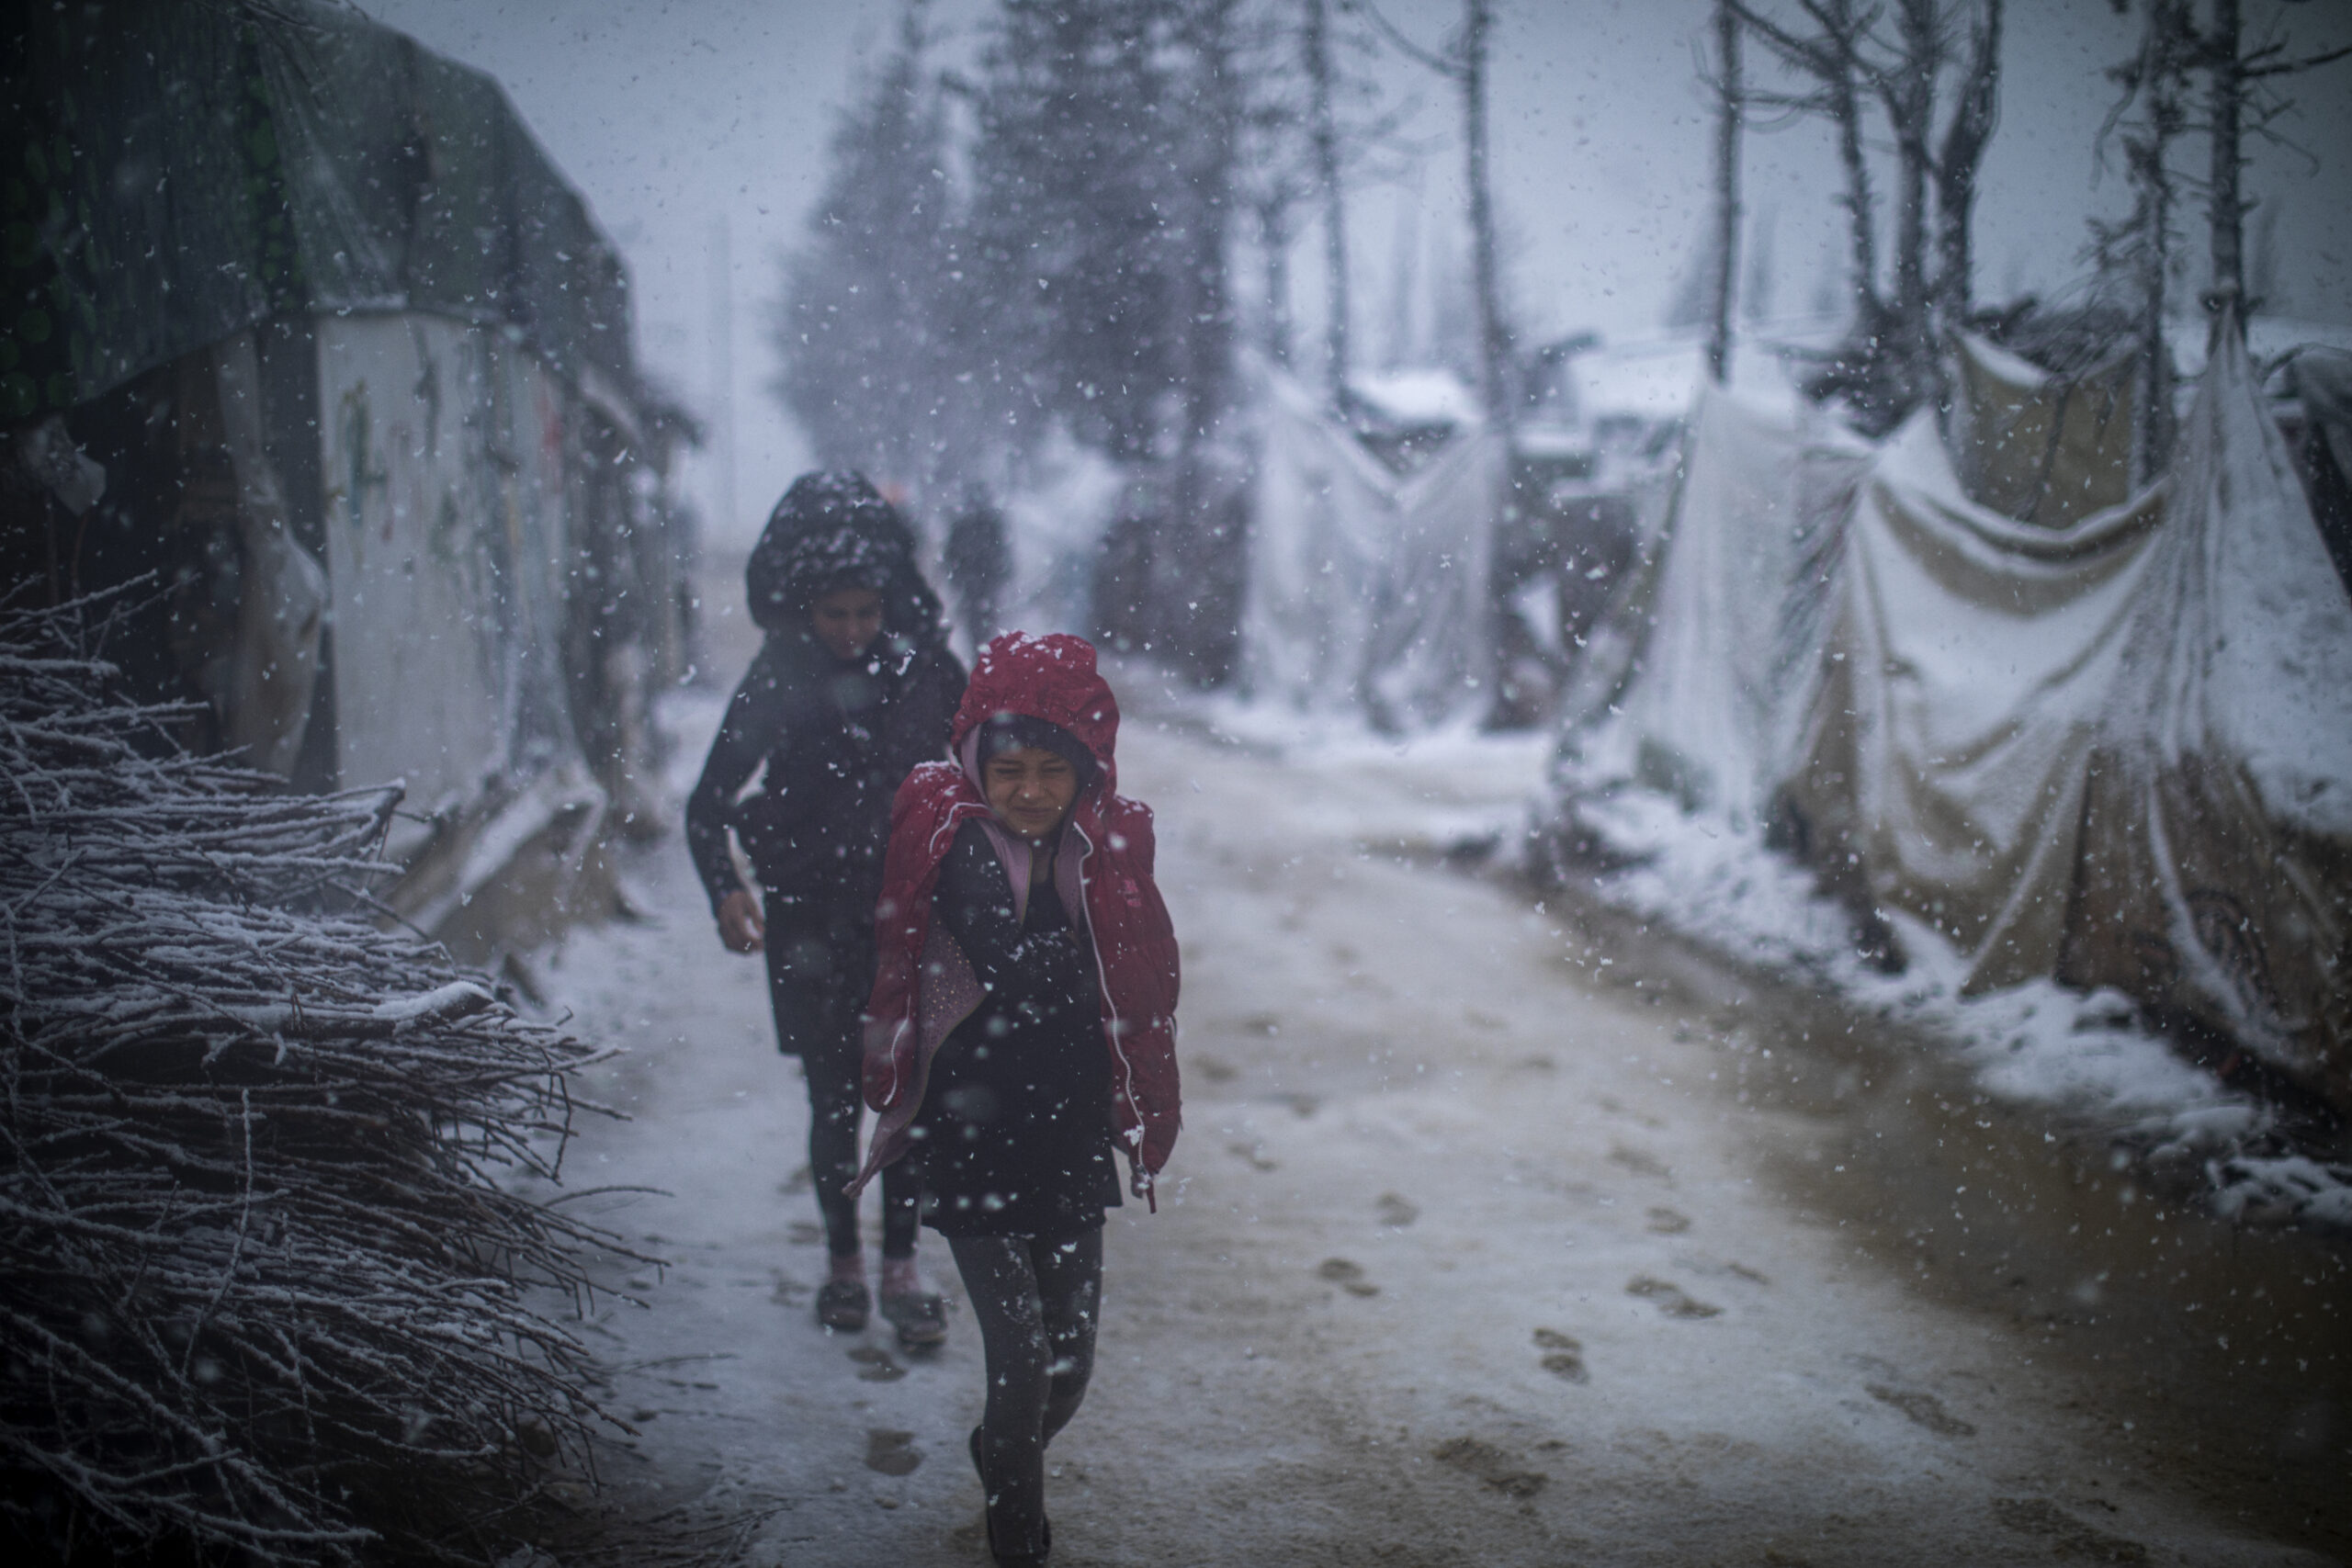 De jeunes réfugiés syriens courent dans la tempête de neige pour rentrer chez eux. Dans le camp de réfugiés informel de la vallée de la Bekaa, les abris ne sont pas adaptés pour résister aux mois d'hiver. ©UNHCR/Diego Ibarra Sánchez